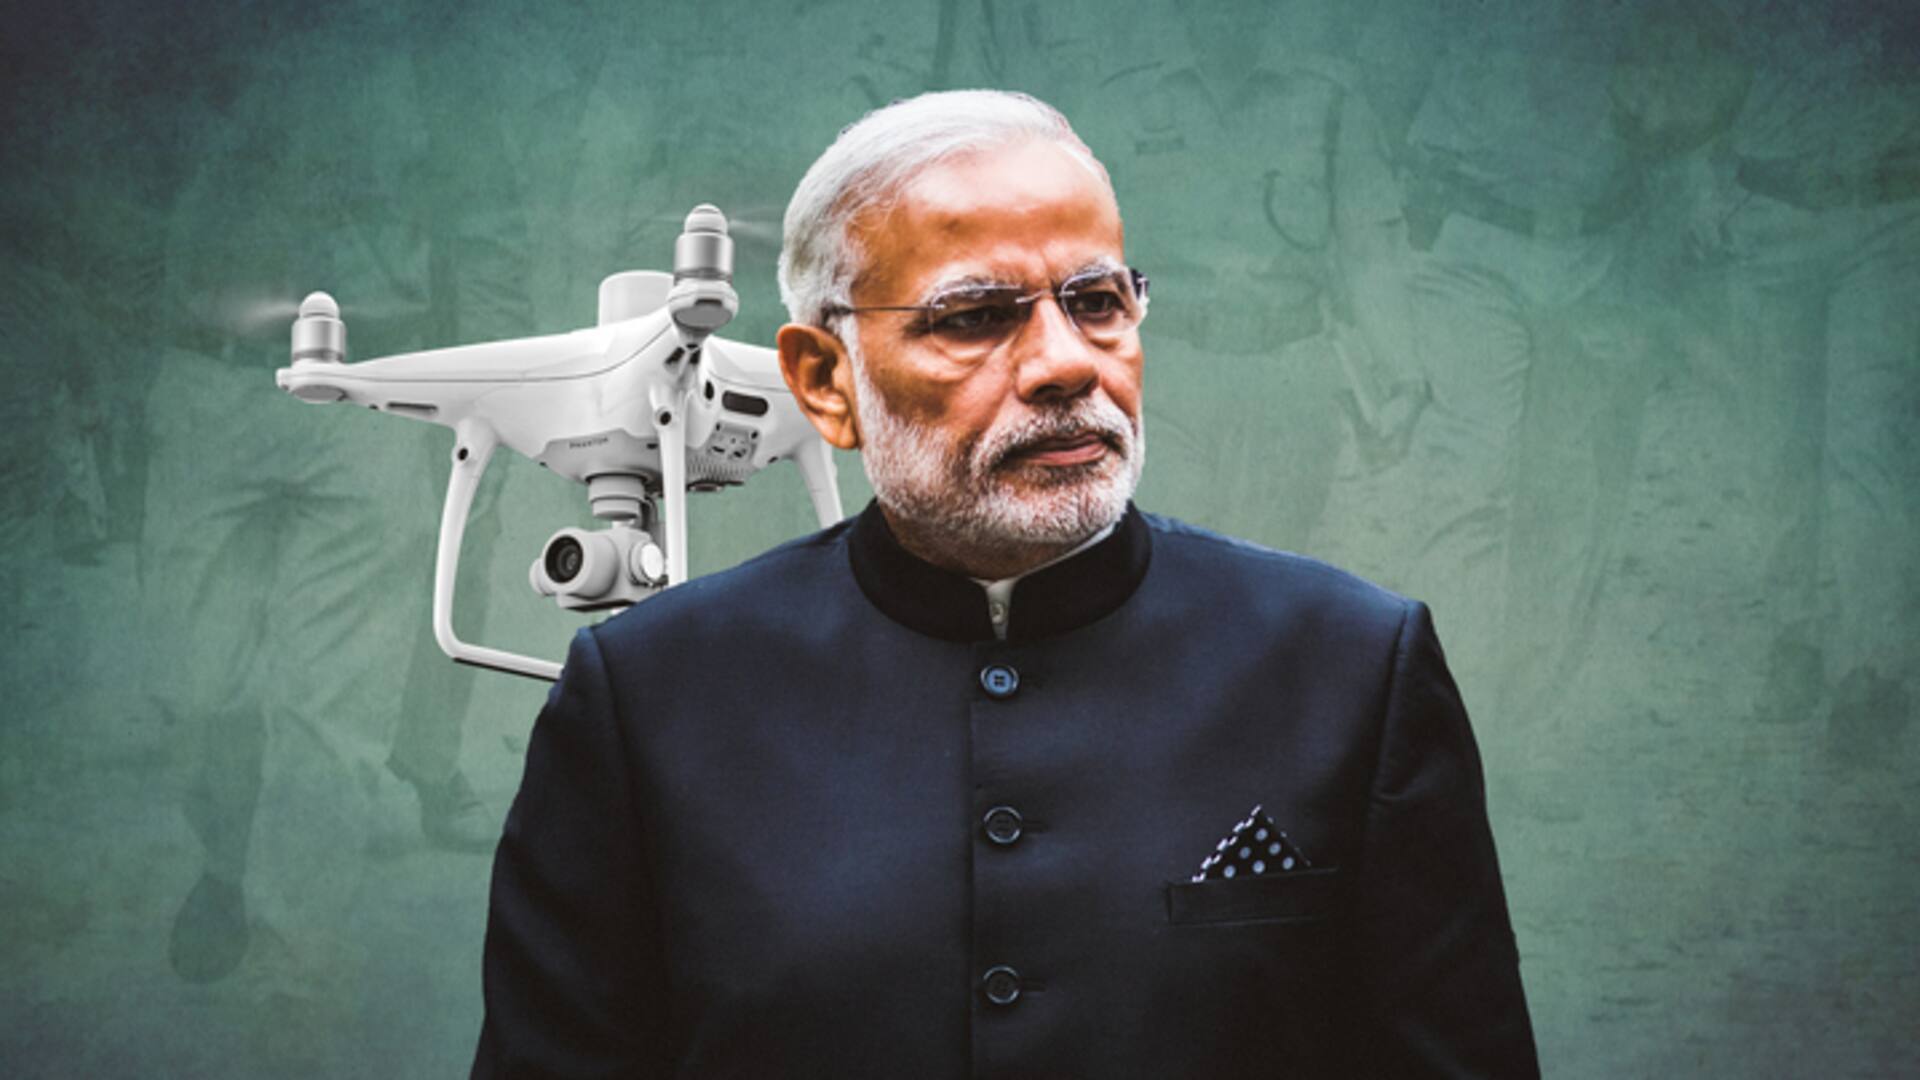 प्रधानमंत्री आवास के ऊपर उड़ता दिखा ड्रोन, जांच में जुटी दिल्ली पुलिस 